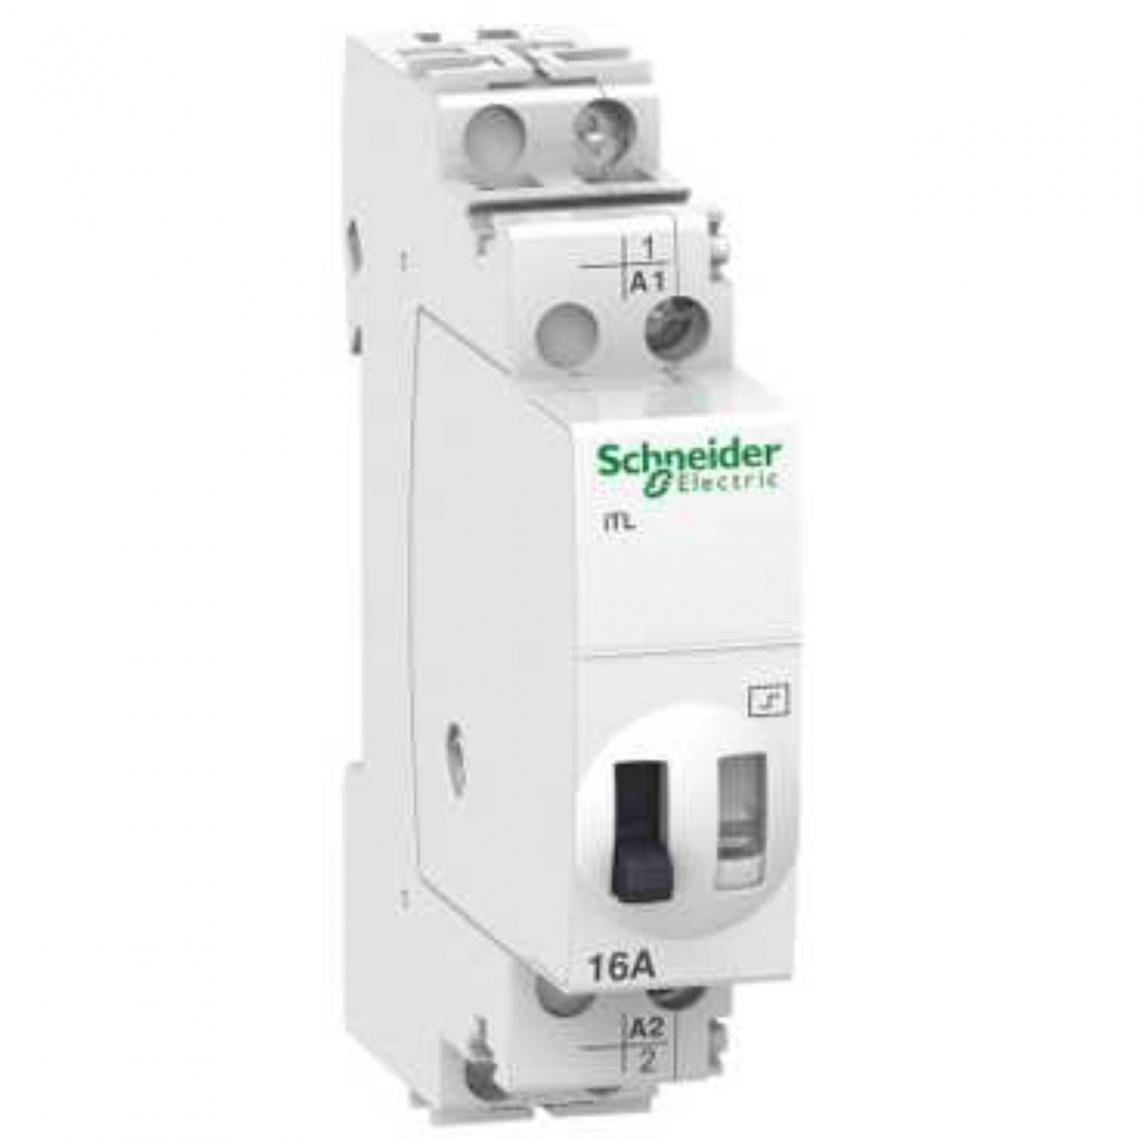 Schneider Electric - télérupteur - schneider - 16a - 1no - 12vca / 6vcc - schneider electric a9c30011 - Télérupteurs, minuteries et horloges